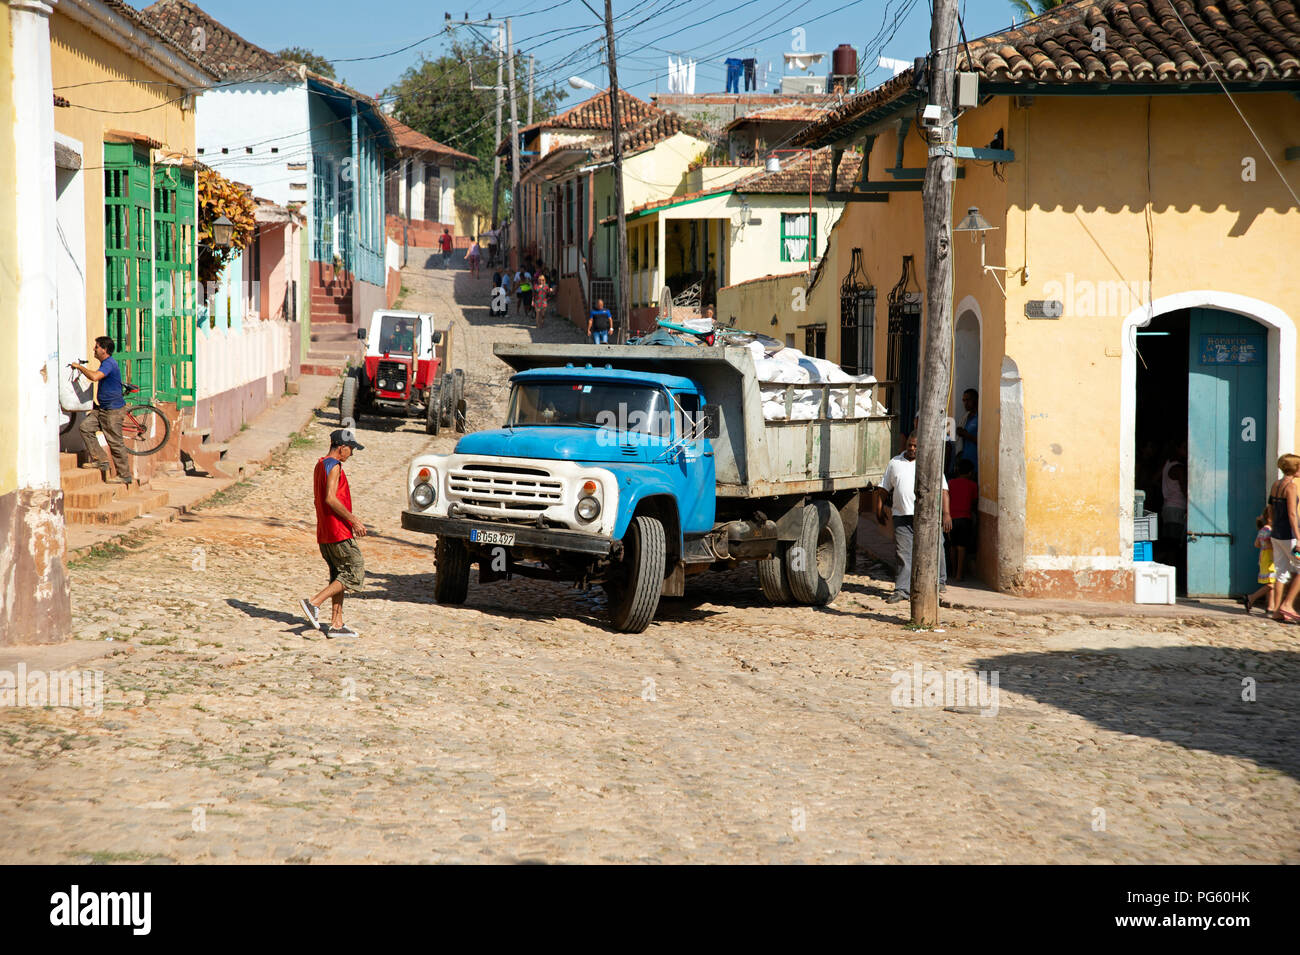 Un vecchio camion trafed che manovra nelle strade secondarie di Trinidad Cuba Foto Stock